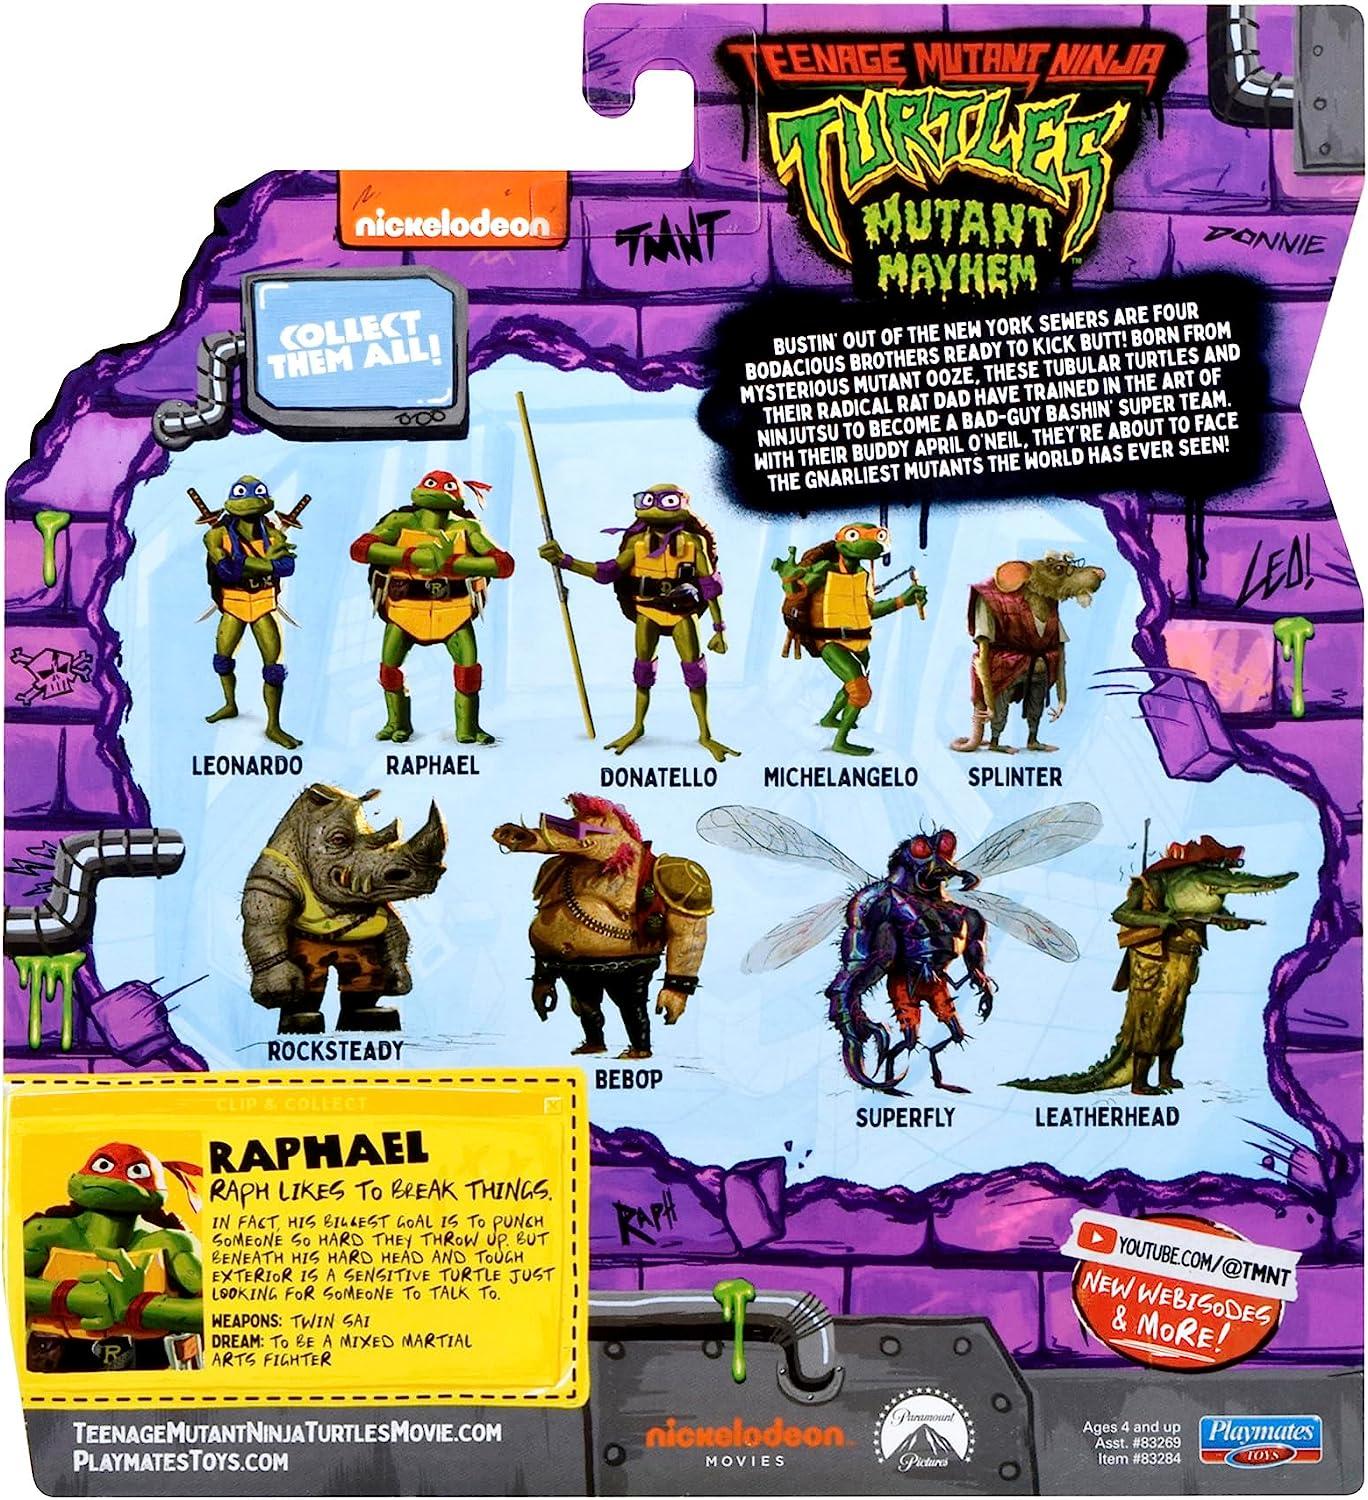 Teenage Mutant Ninja Turtles RAPHAEL Mutant Mayhem